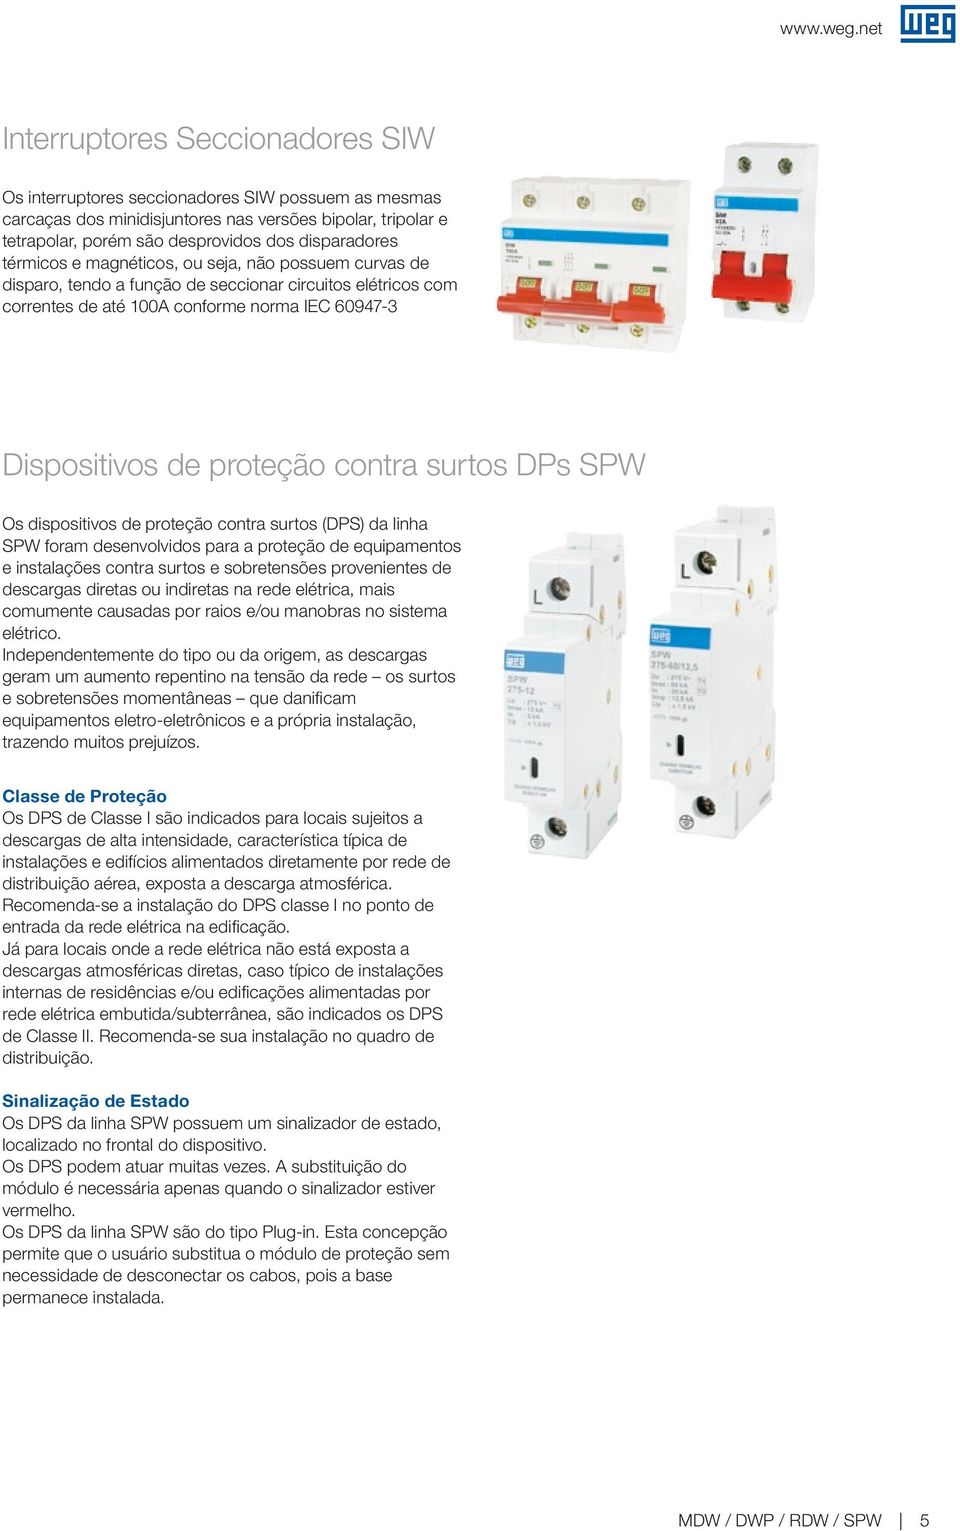 surtos DPs SPW Os dispositivos de proteção contra surtos (DPS) da linha SPW foram desenvolvidos para a proteção de equipamentos e instalações contra surtos e sobretensões provenientes de descargas